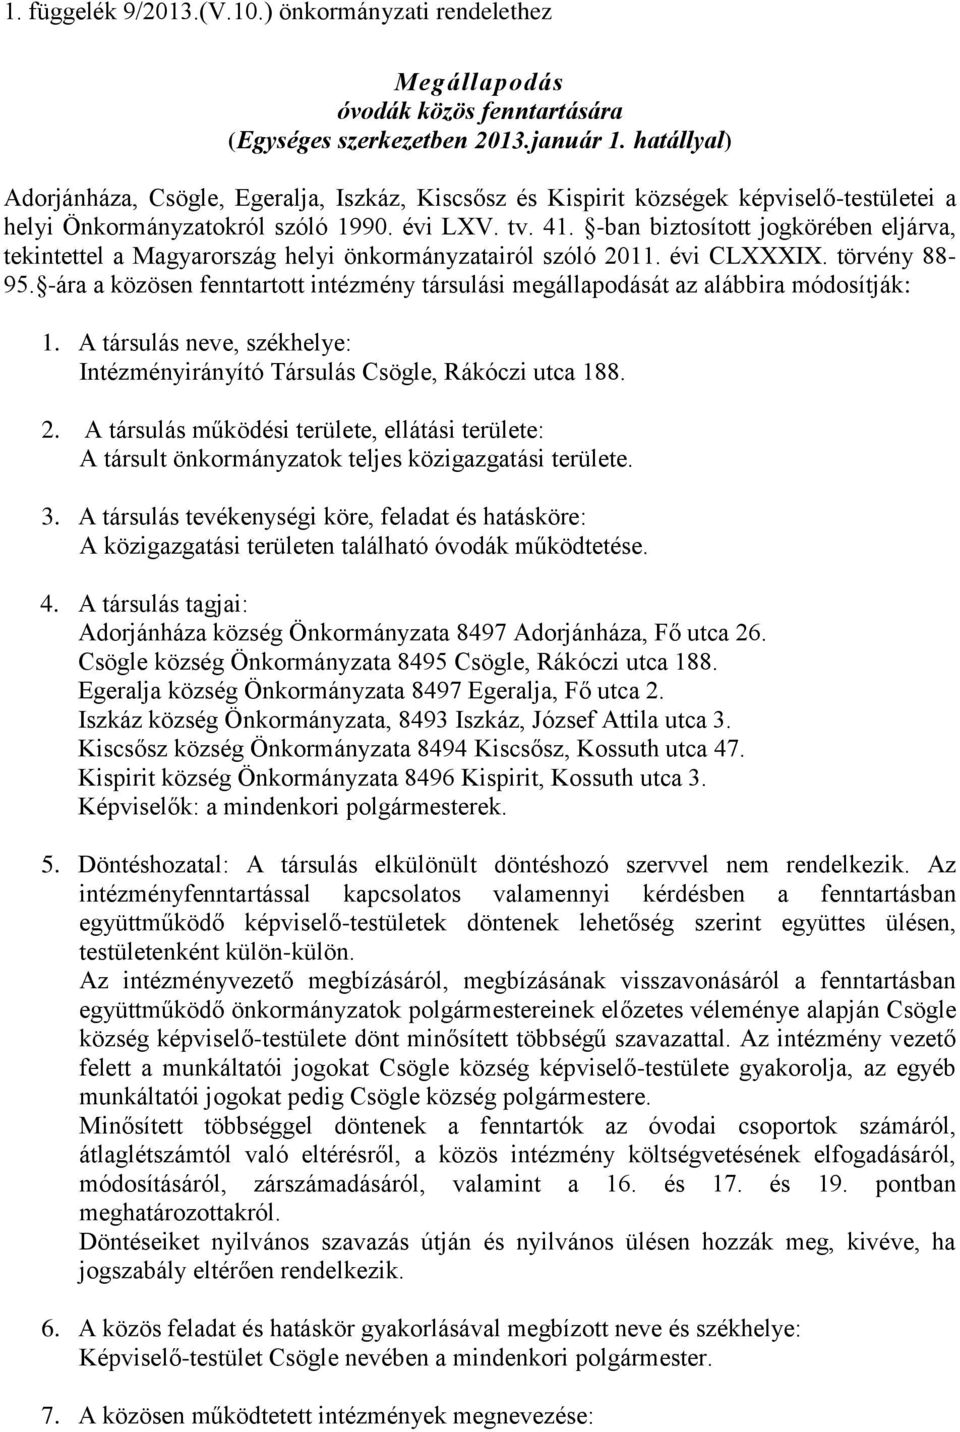 -ban biztosított jogkörében eljárva, tekintettel a Magyarország helyi önkormányzatairól szóló 2011. évi CLXXXIX. törvény 88-95.